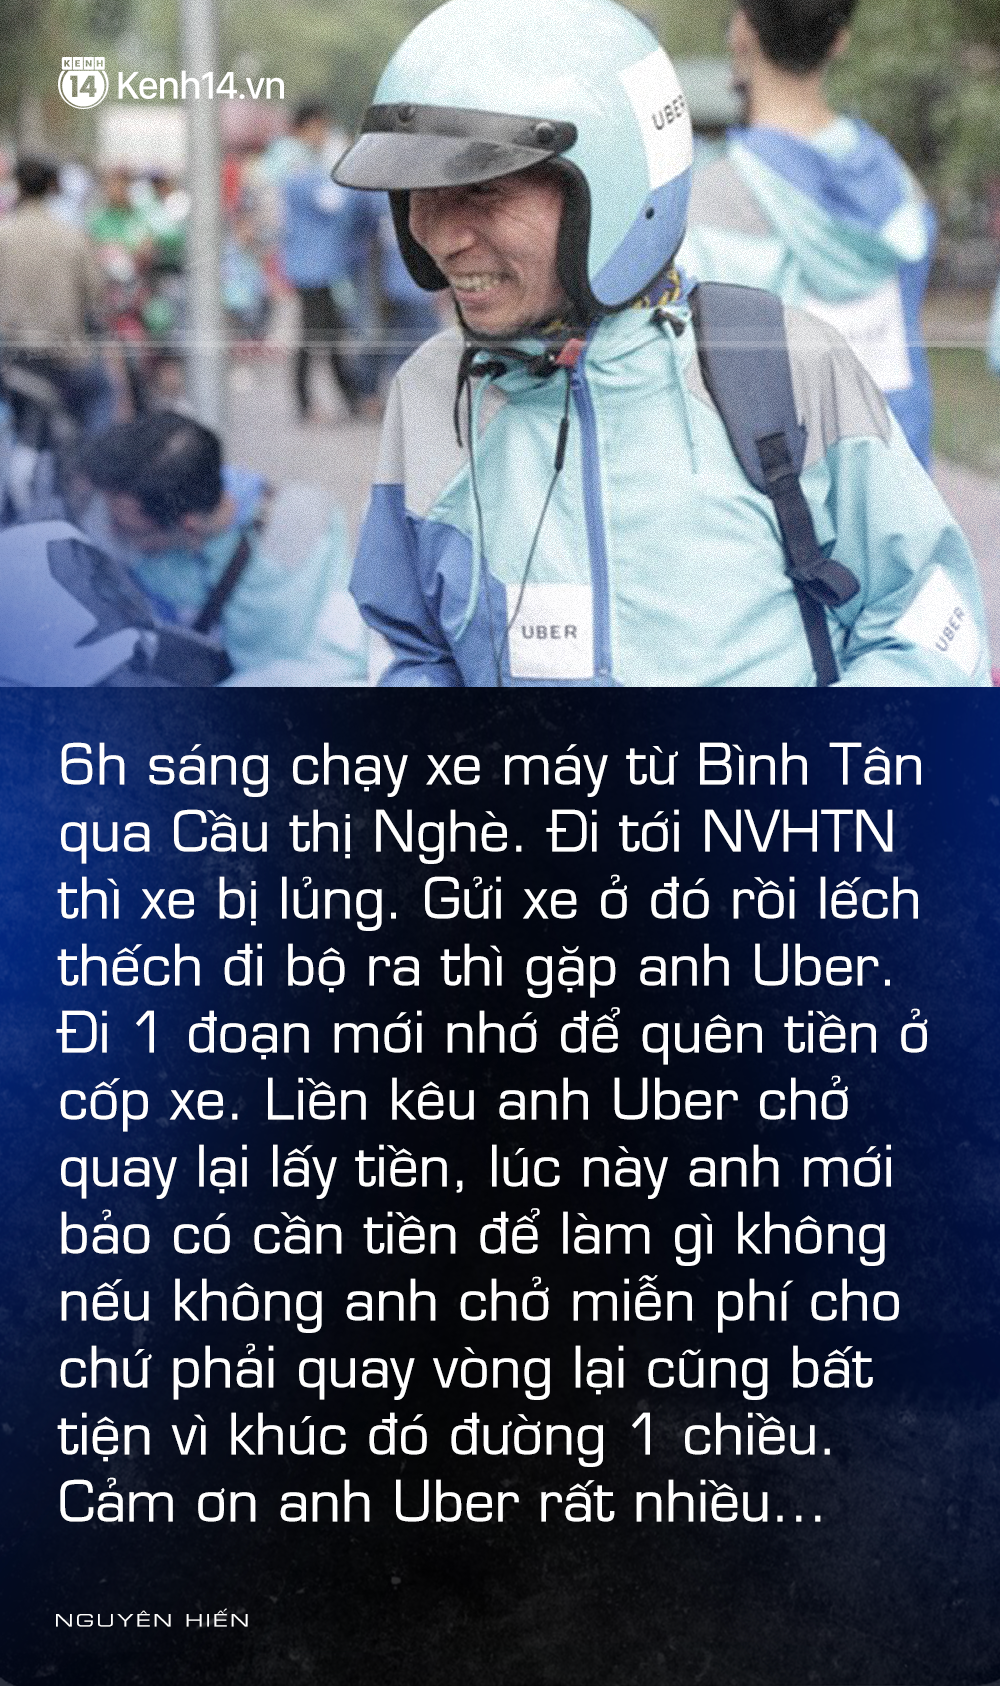 Chia sẻ của cựu CEO Uber Việt Nam trong ngày cuối của Uber: Chẳng có gì là trường tồn, chỉ có lòng tốt là ở lại - Ảnh 8.